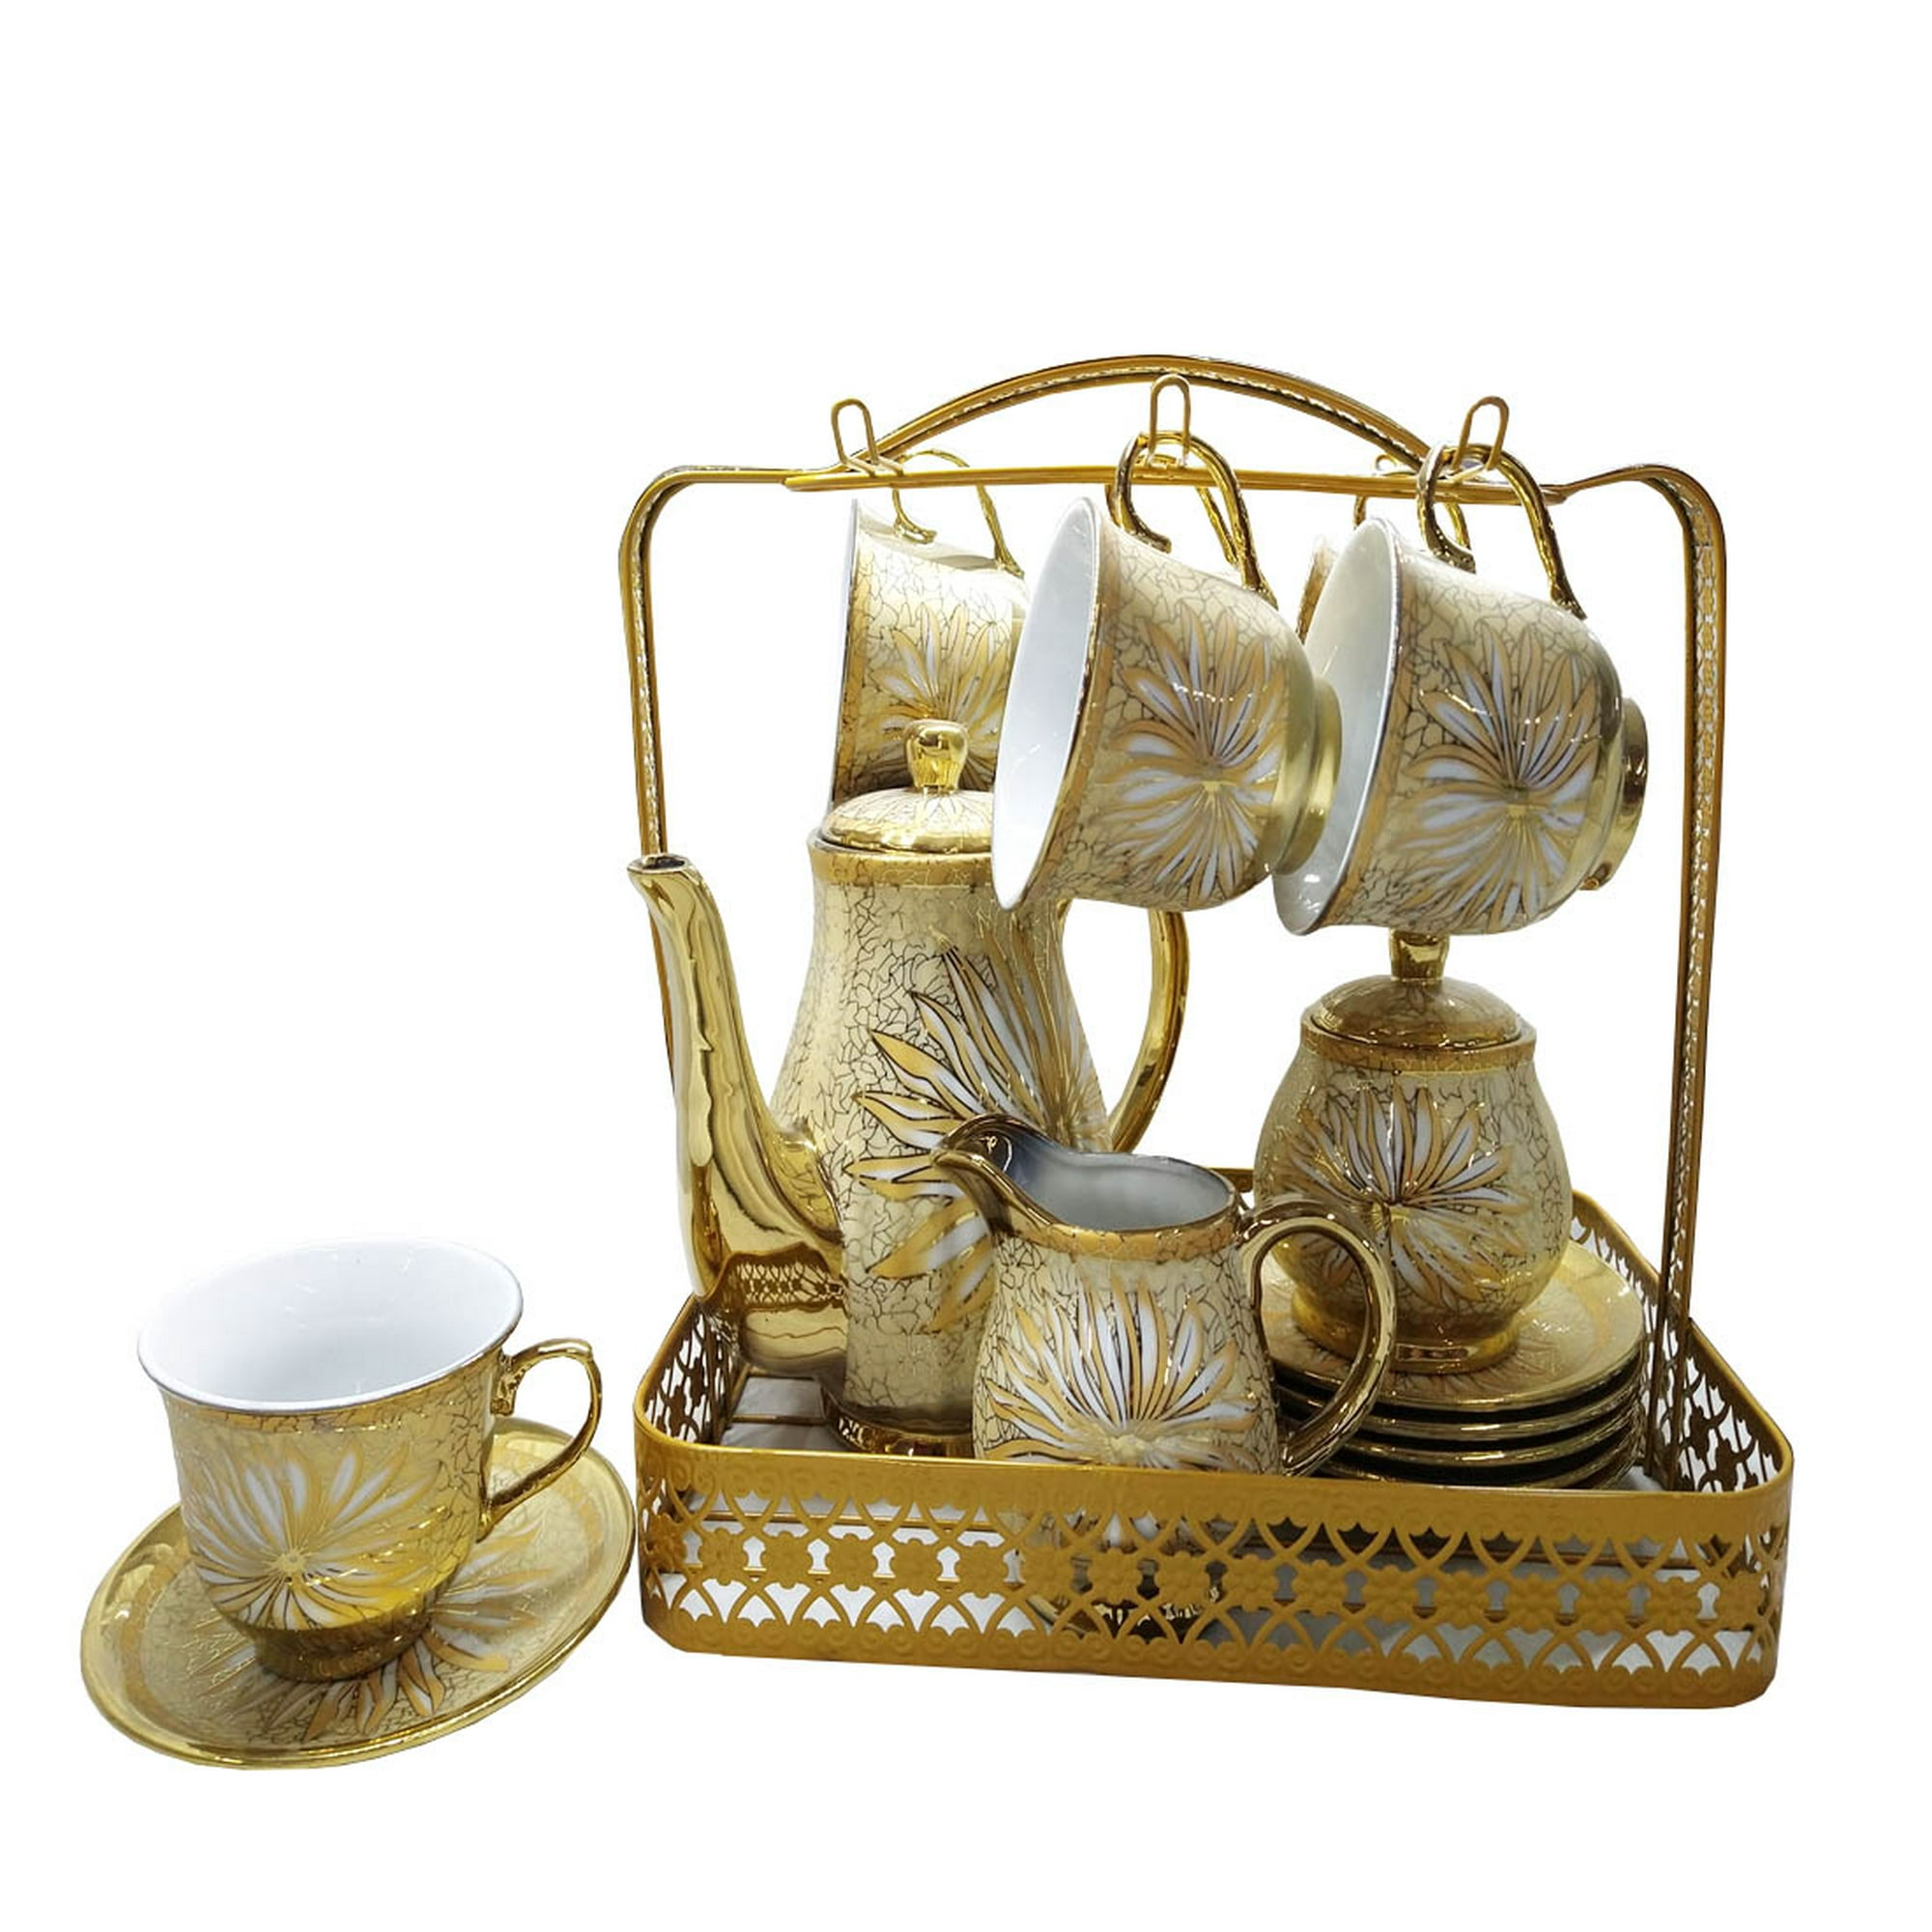 Tetera 'tea for one' de porcelana con acabado en pan de oro.